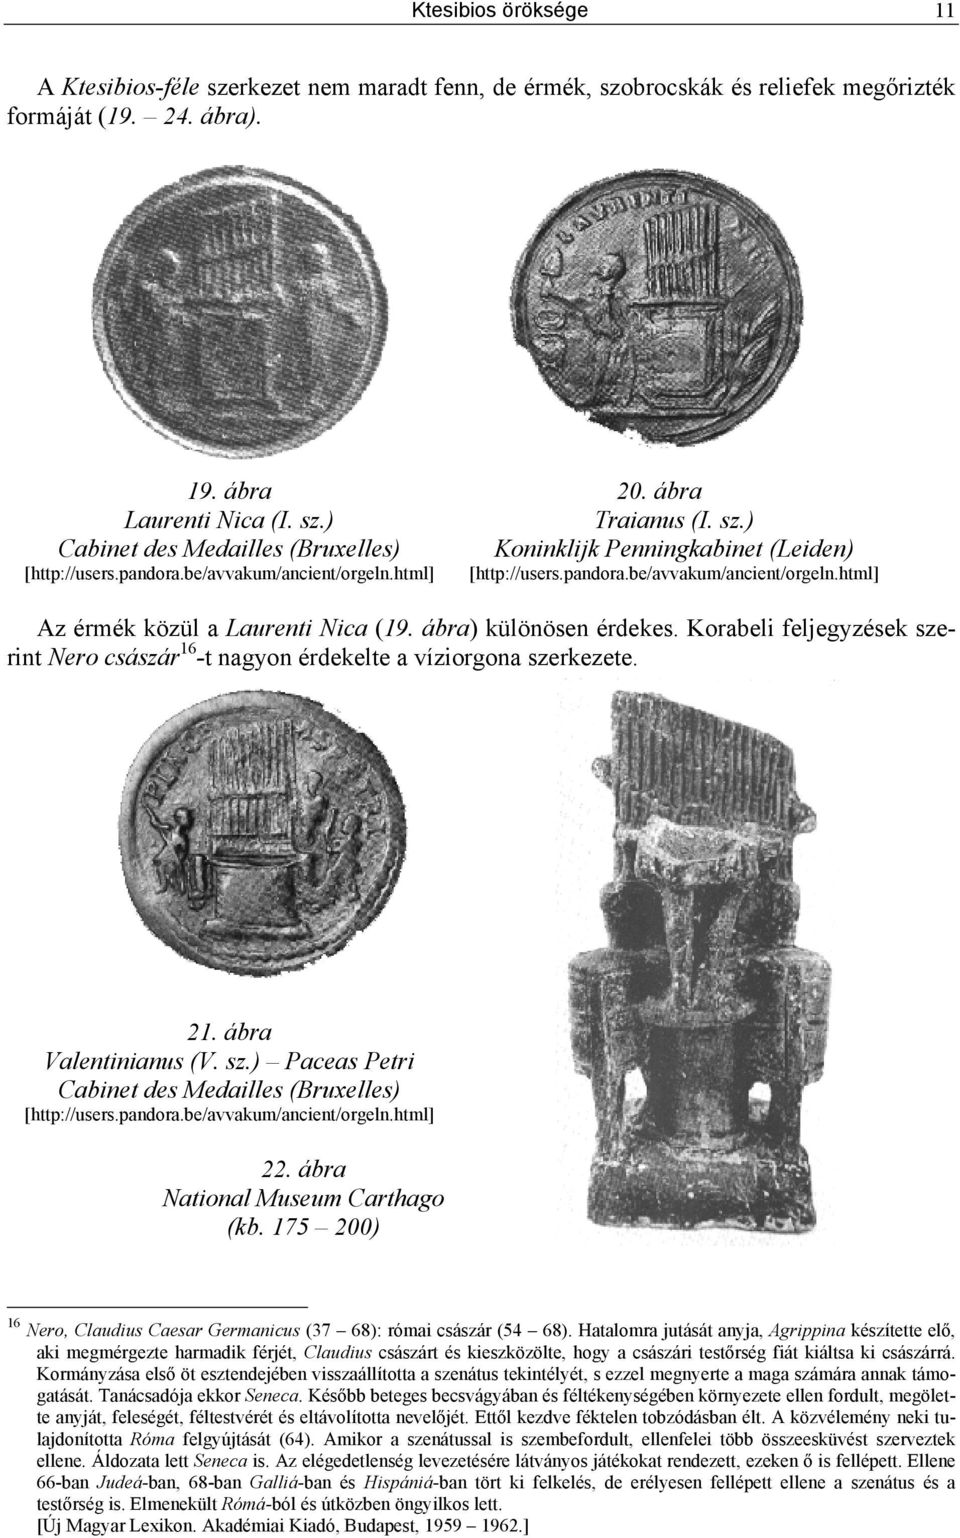 Korabeli feljegyzések szerint Nero császár 16 -t nagyon érdekelte a víziorgona szerkezete. 21. ábra Valentinianus (V. sz.) Paceas Petri Cabinet des Medailles (Bruxelles) [http://users.pandora.